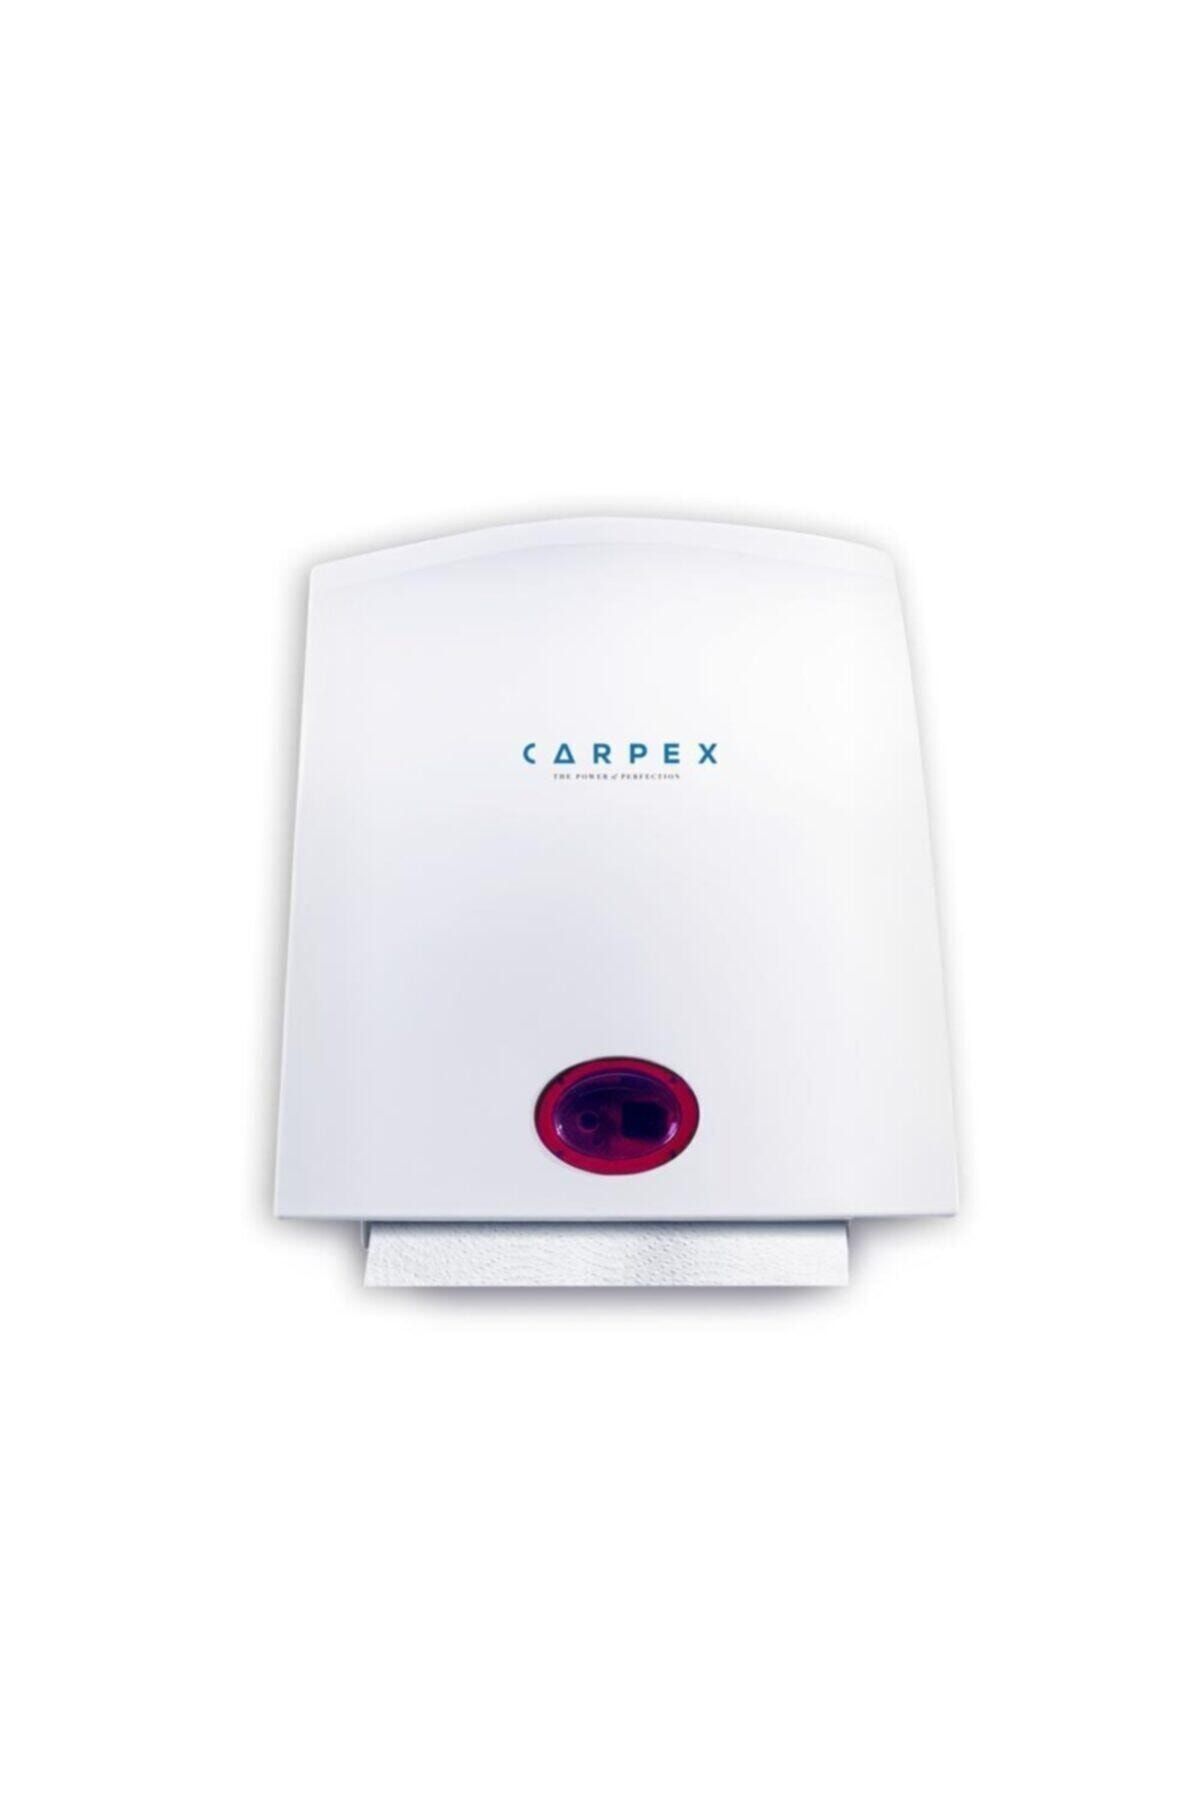 Carpex 21 Cm Sensörlü Hareketli Havlu Makinası - Beyaz